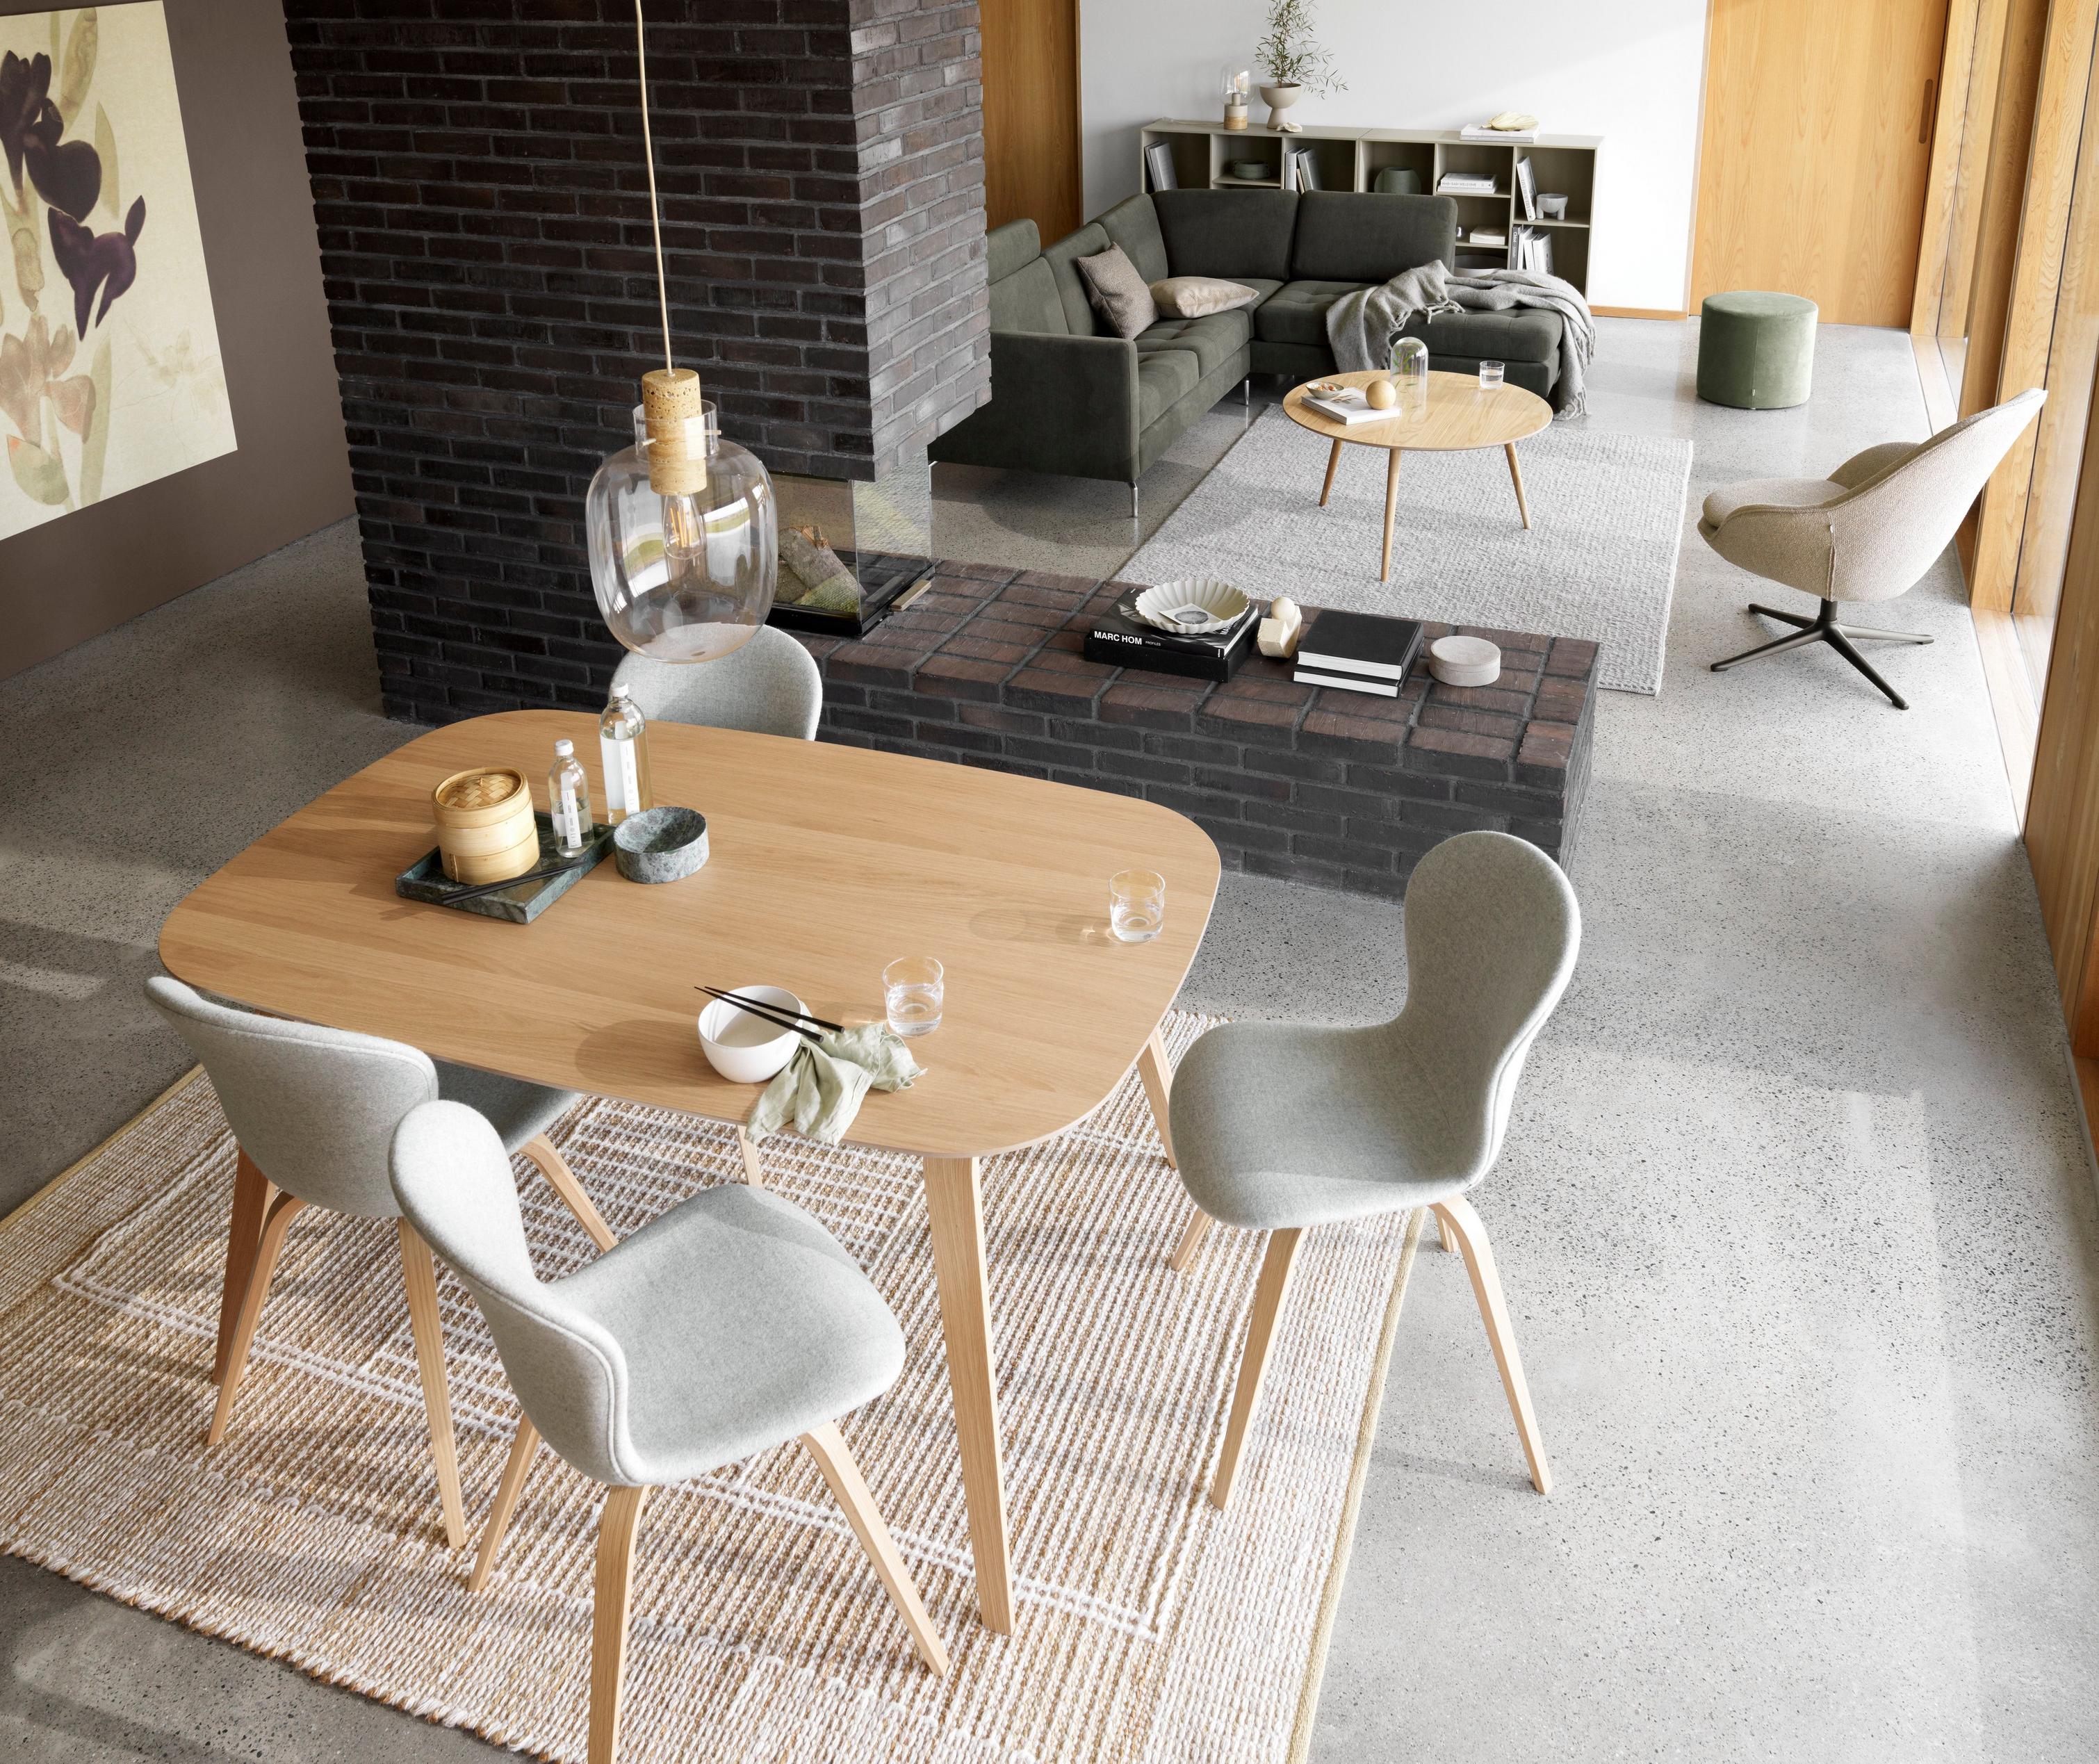 Stół i krzesła Hauge tapicerowane jasnoszarą, melanżową tkaniną Wellington, w tle sofa narożną Osaka w ciemnozielonej tkaninie Frisco.